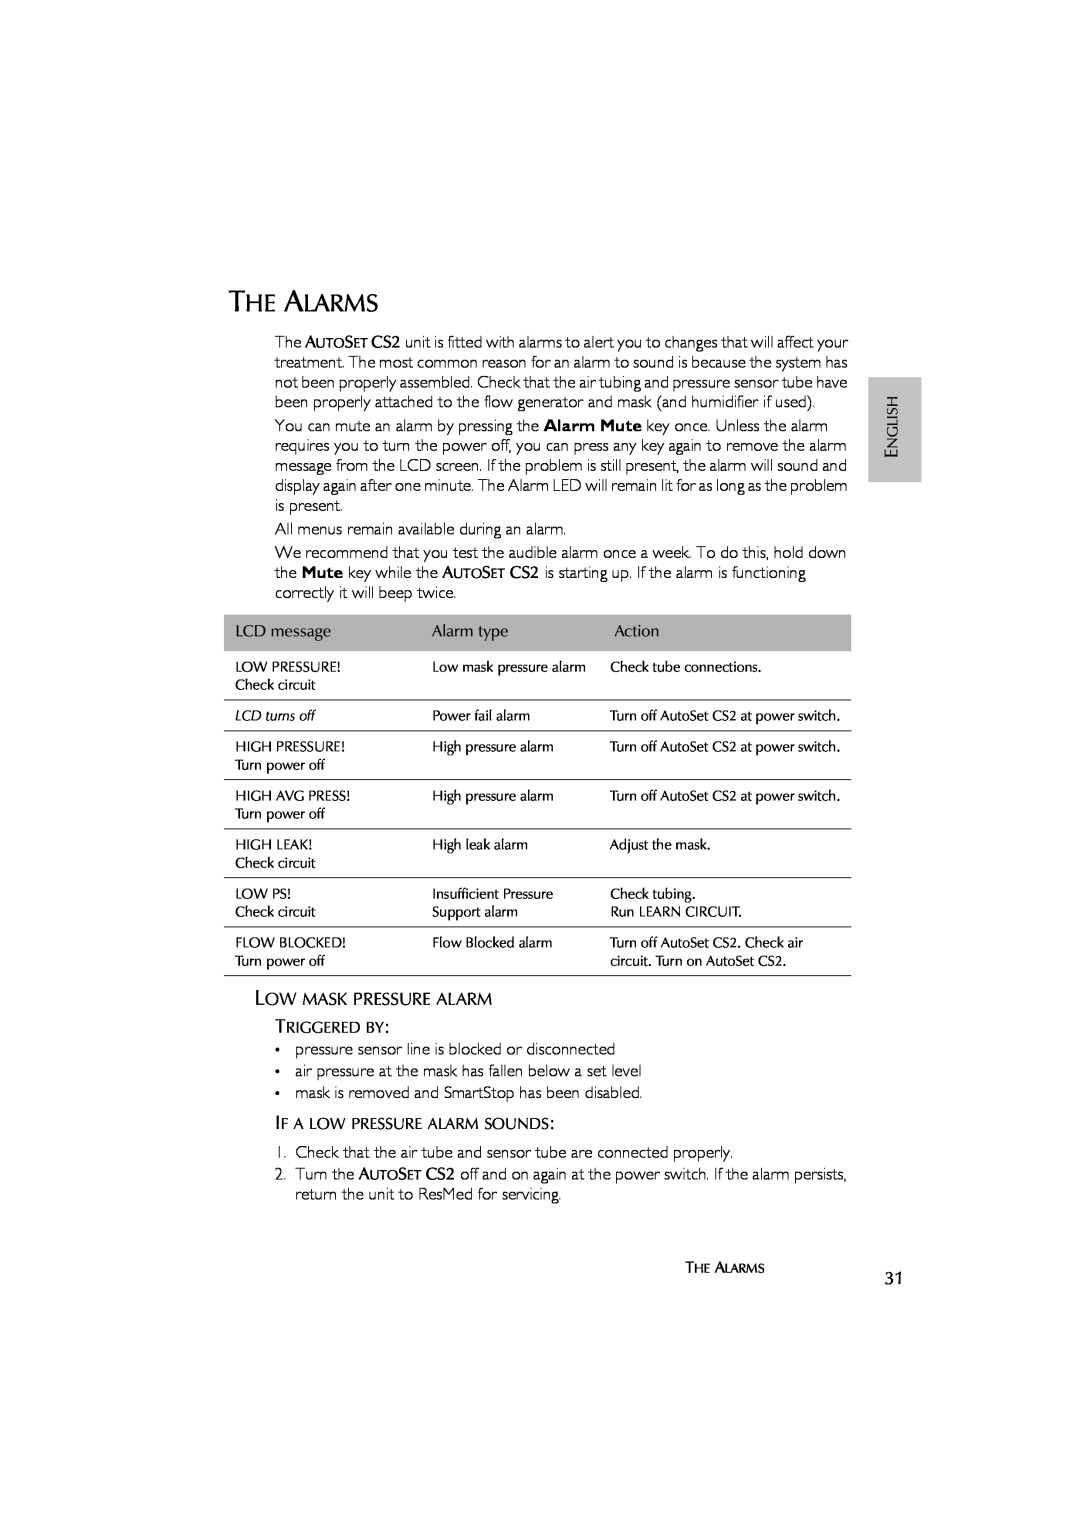 ResMed AutoSet CS 2 user manual The Alarms 